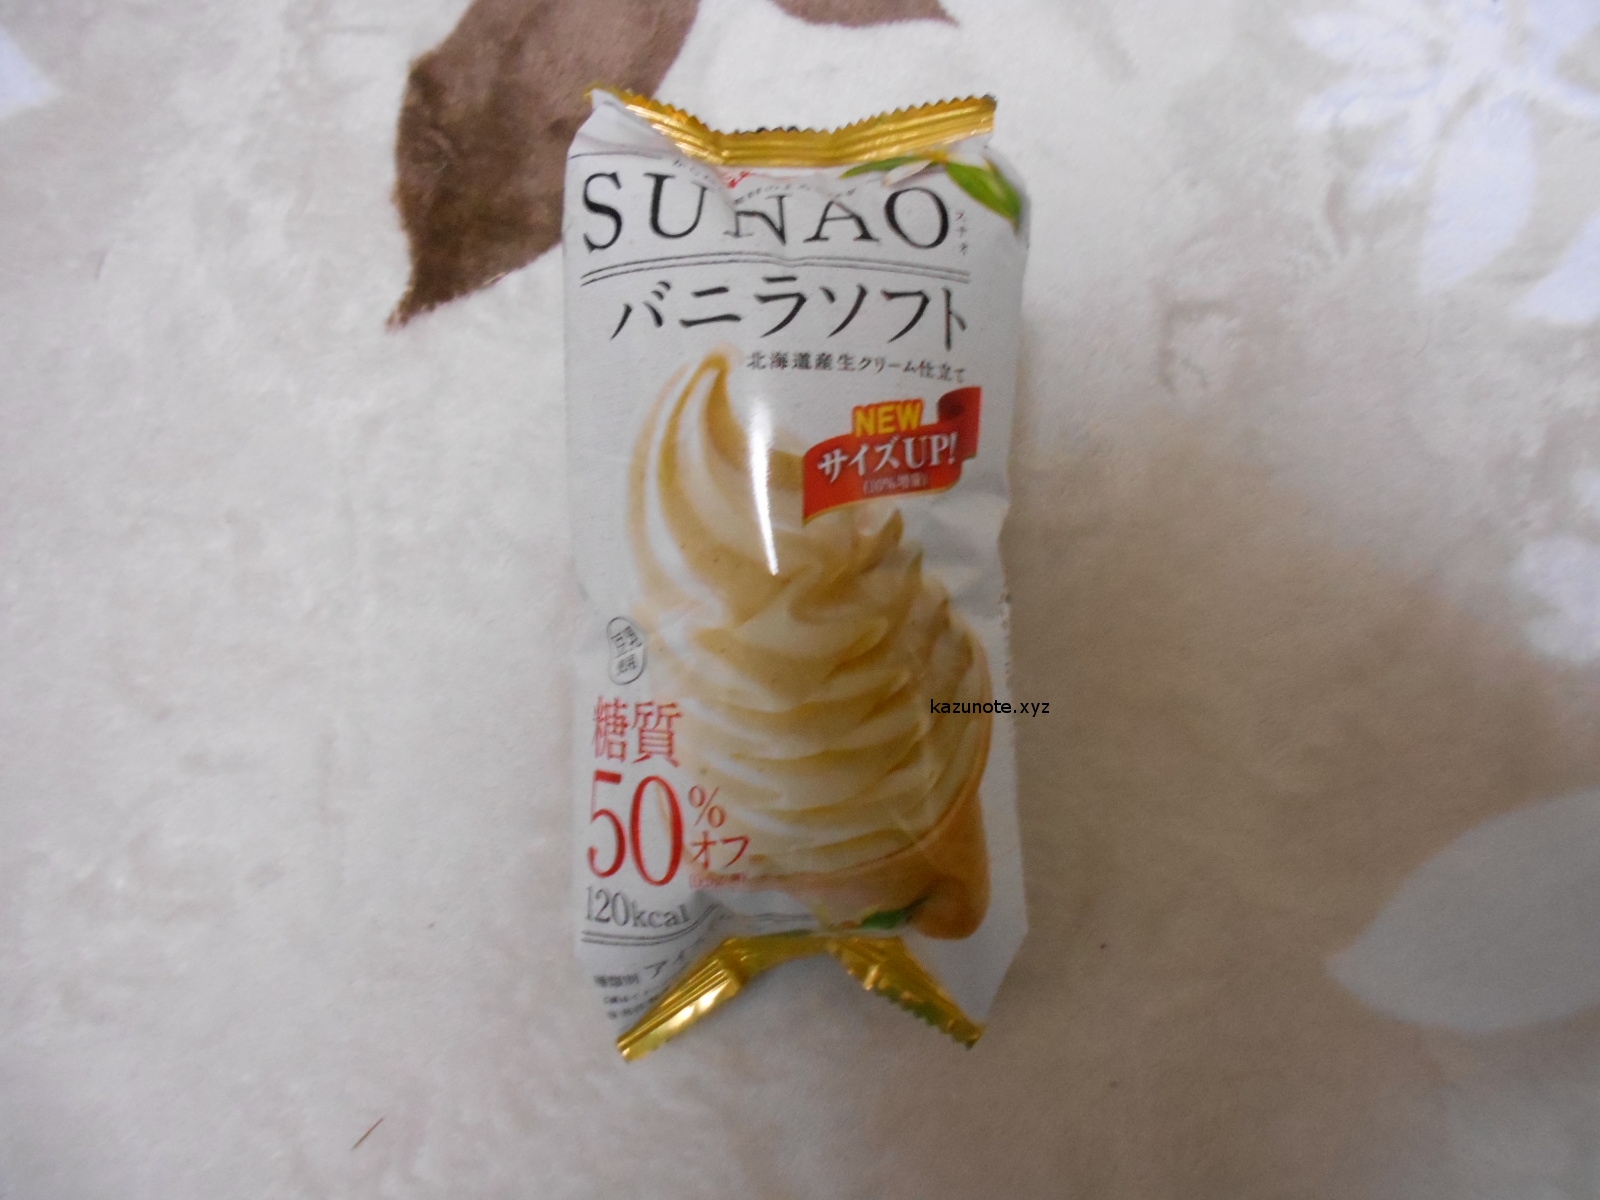 グリコの新商品sunao スナオ を食べてみたがマズかった カズのノート